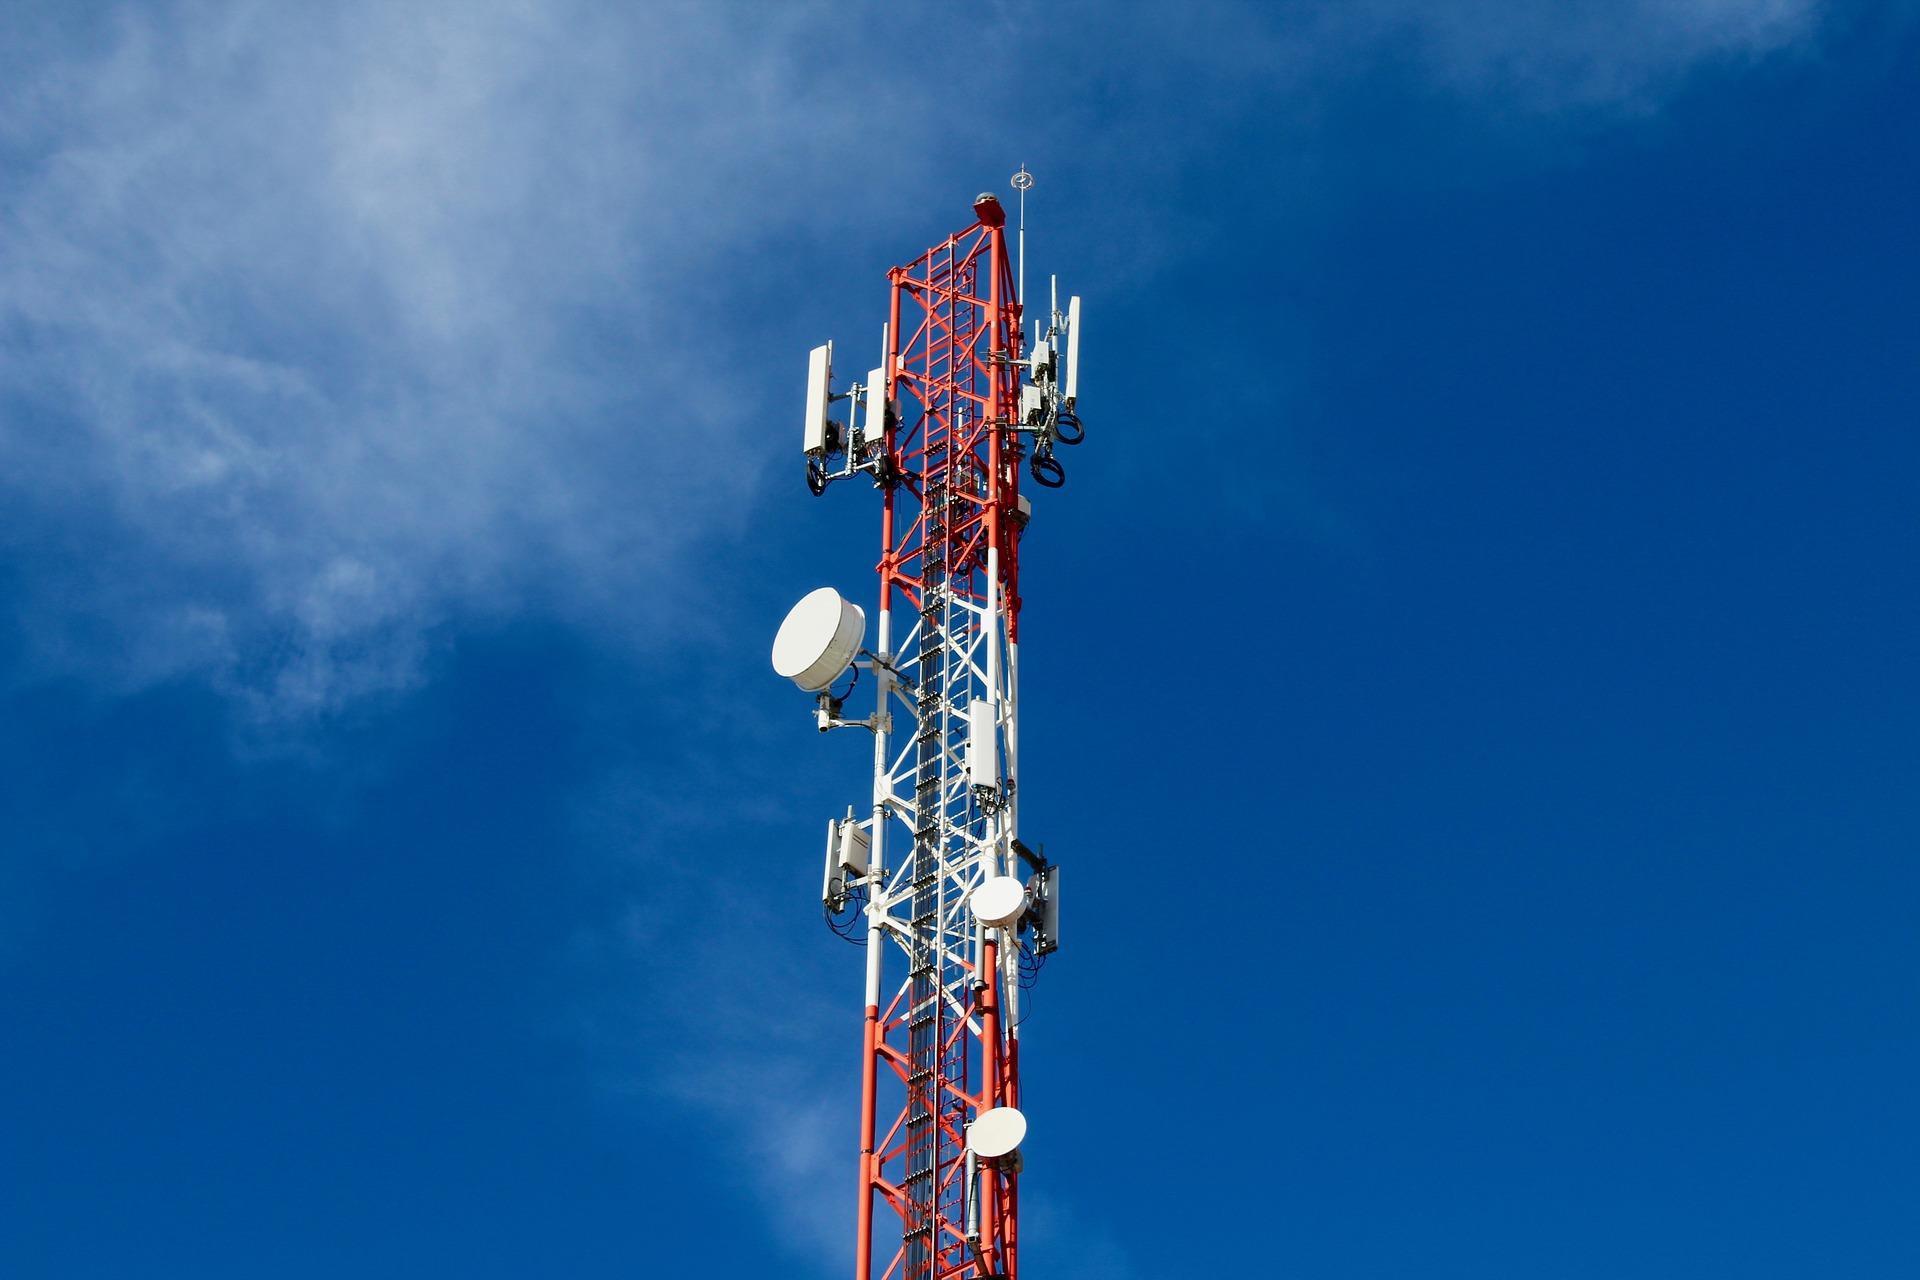 Cinco nuevas antenas de telecomunicaciones se instalarán en sectores rurales de Los Ángeles